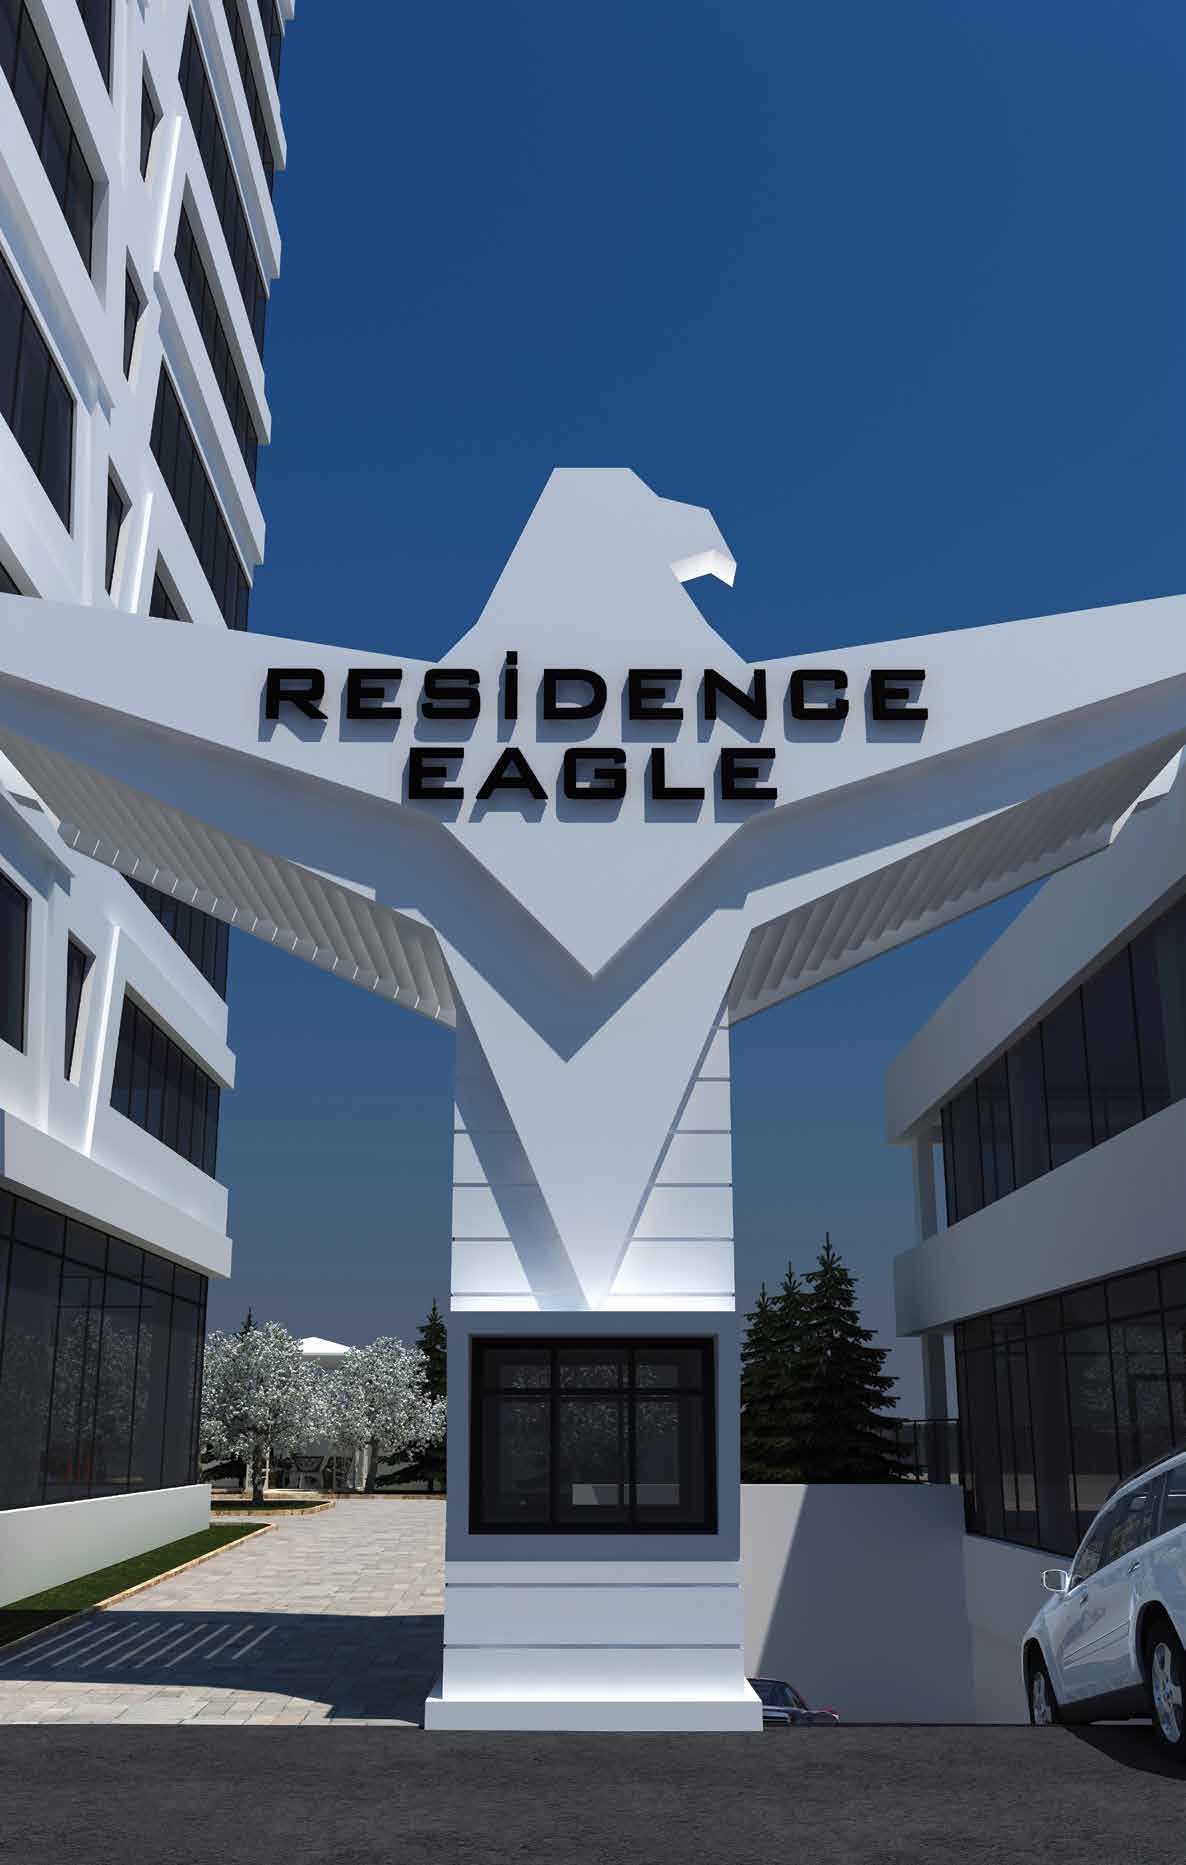 RESIDENCE EAGLE AYRICALIKLAR İşbu Mahal Listesi, Residence Eagle Projesi ndeki konutların genel özelliklerini tarif etmektedir.